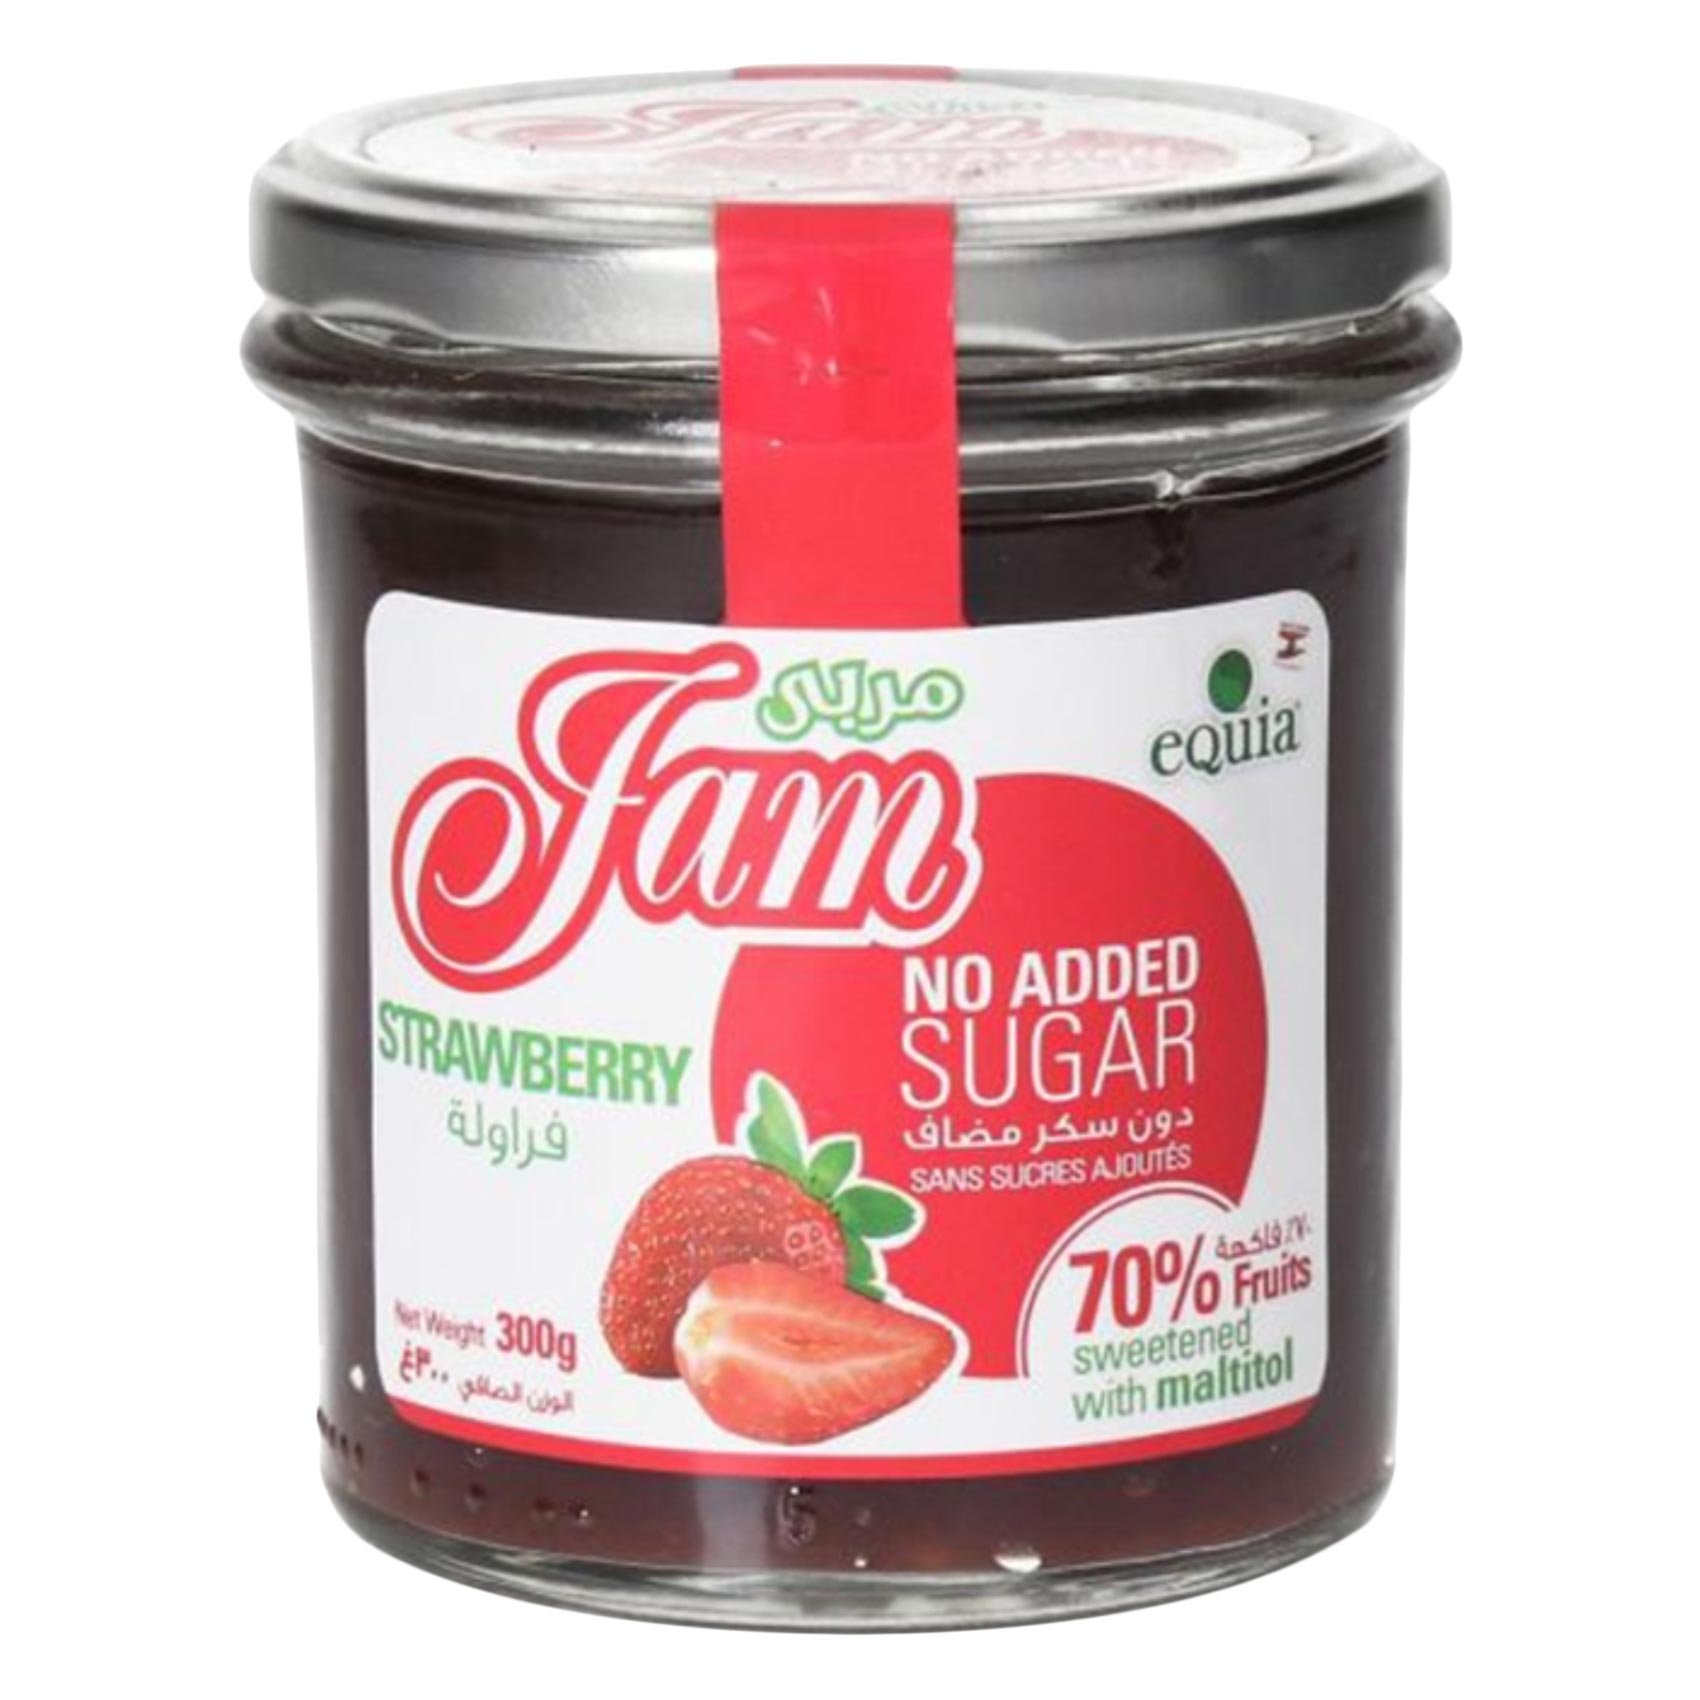 Equia Sugar Free Strawberry Jam 300g